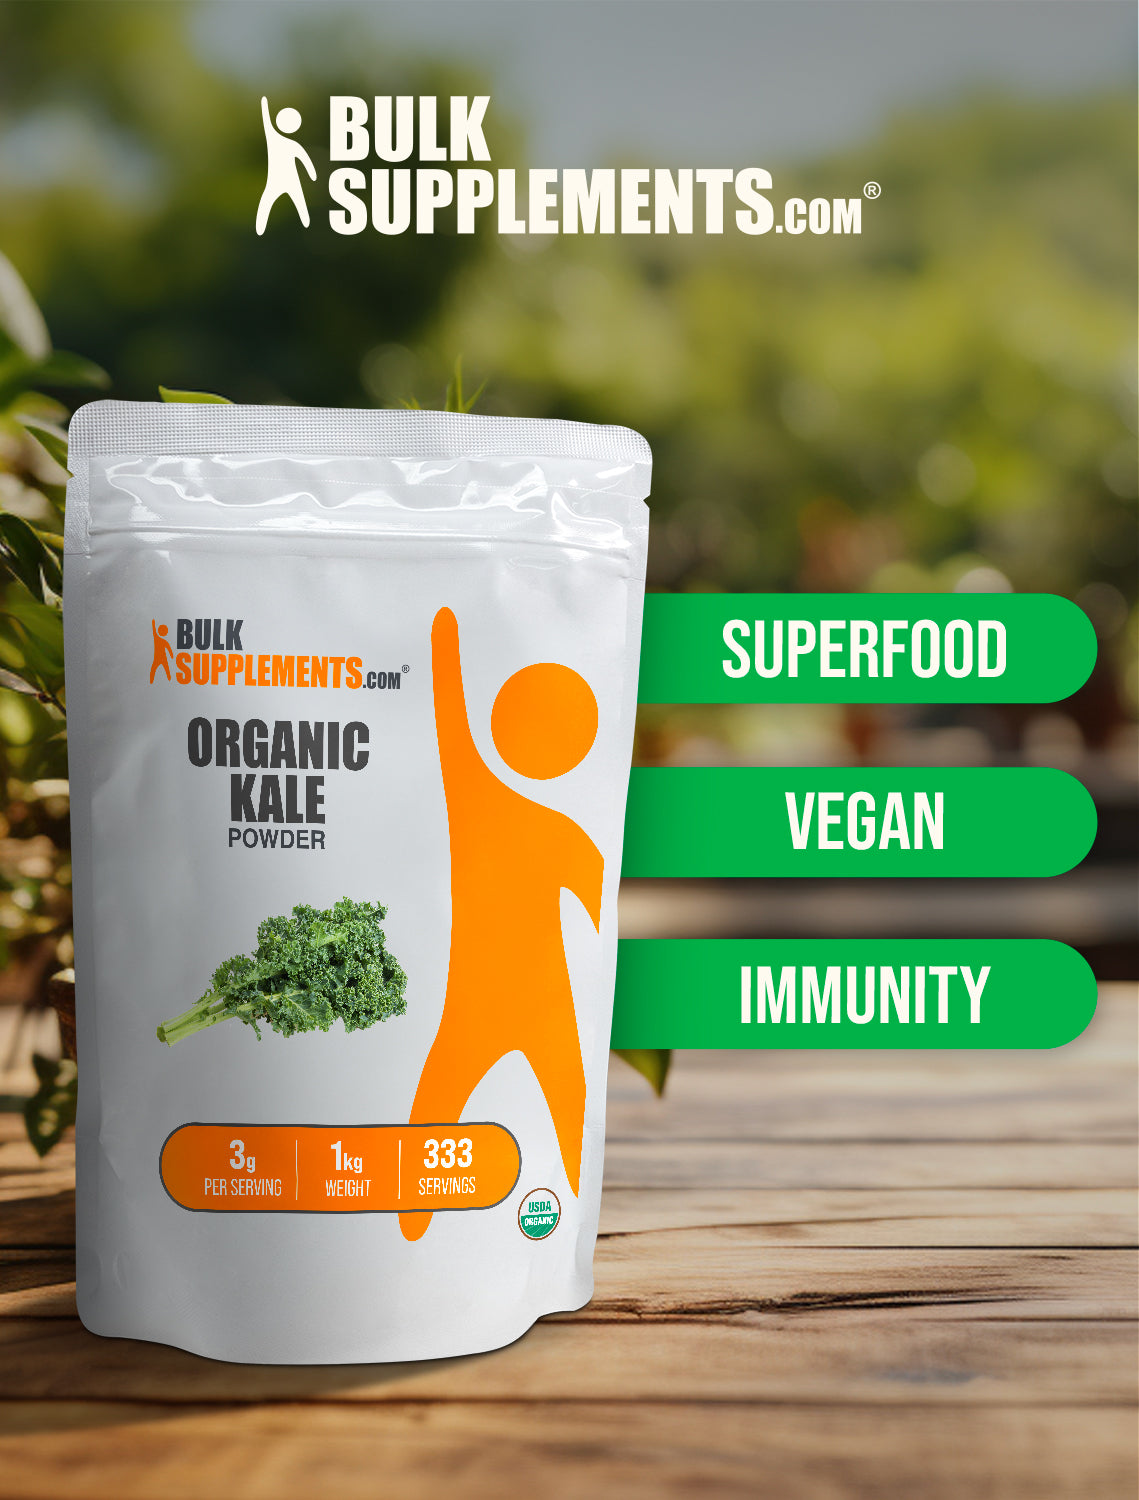 Organic kale powder keyword image 1kg